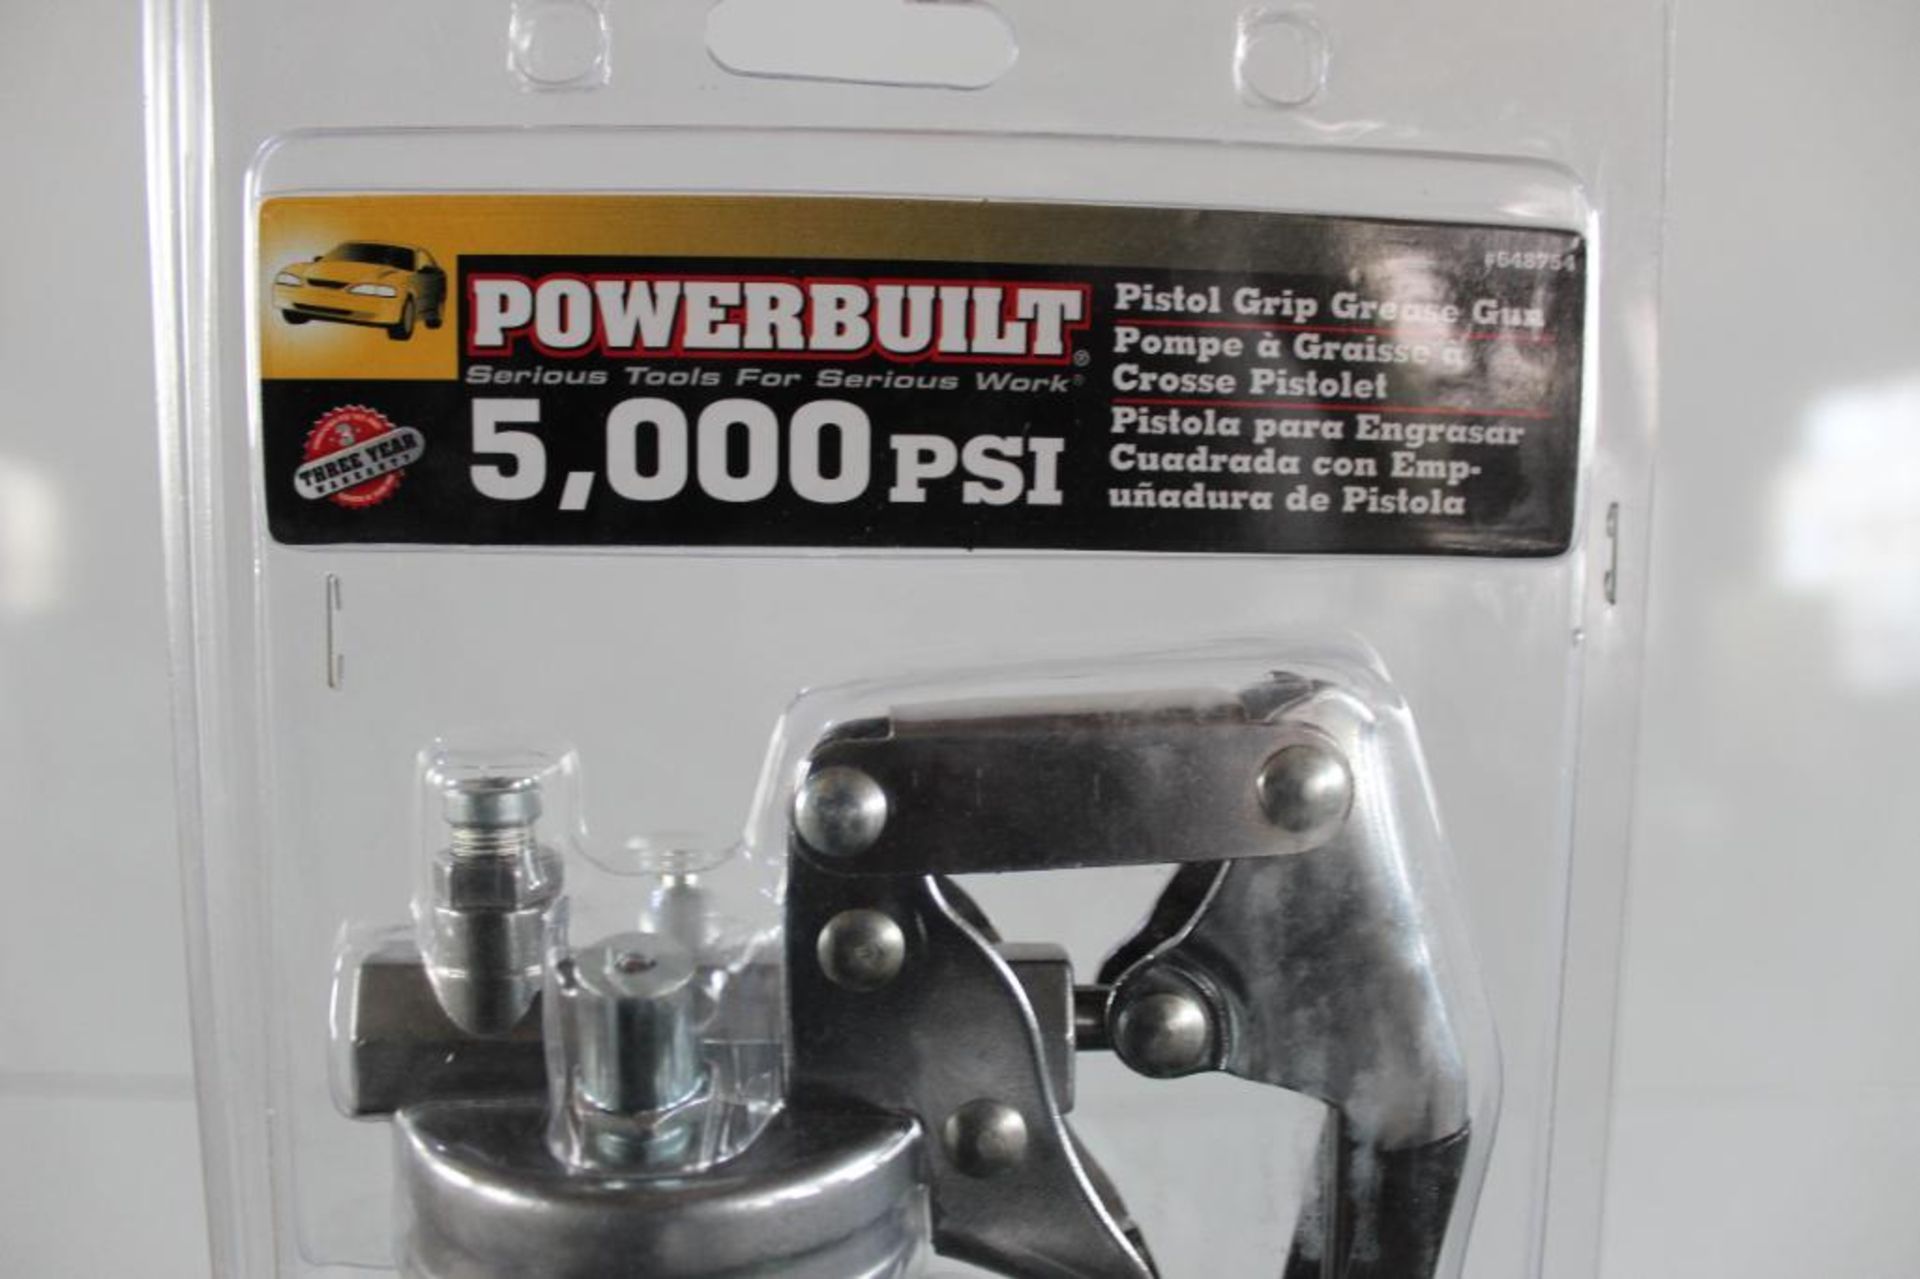 Lot of (6) Powerbuilt Pistol Grip Grease Gun #648754 5000PSI - Image 6 of 6